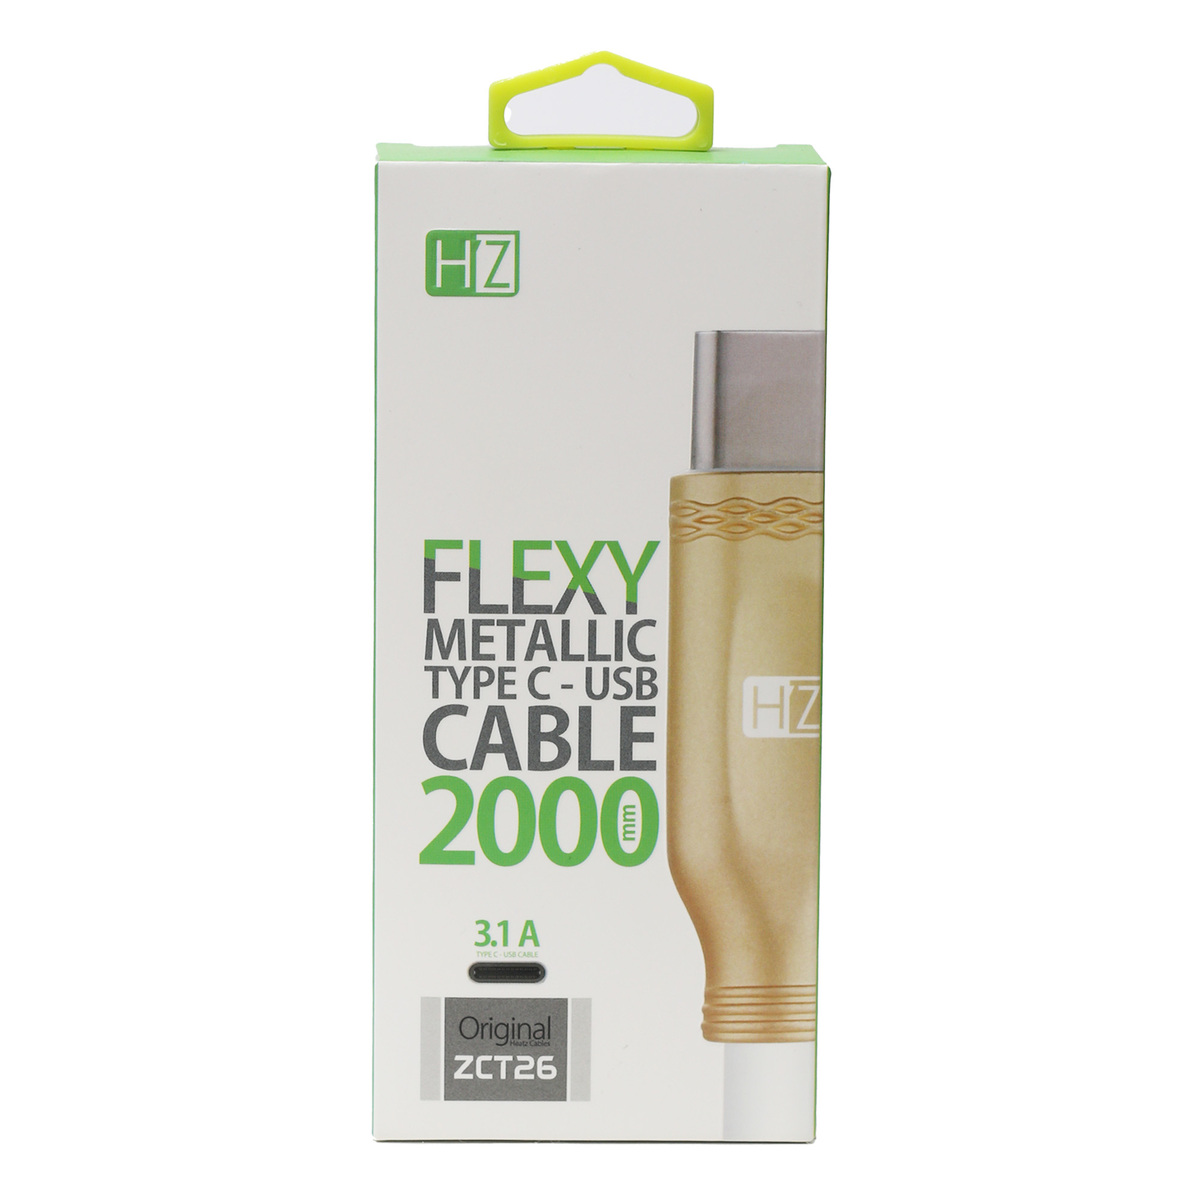 Heatz Flexy Type C Cable ZCT26 2 Meter